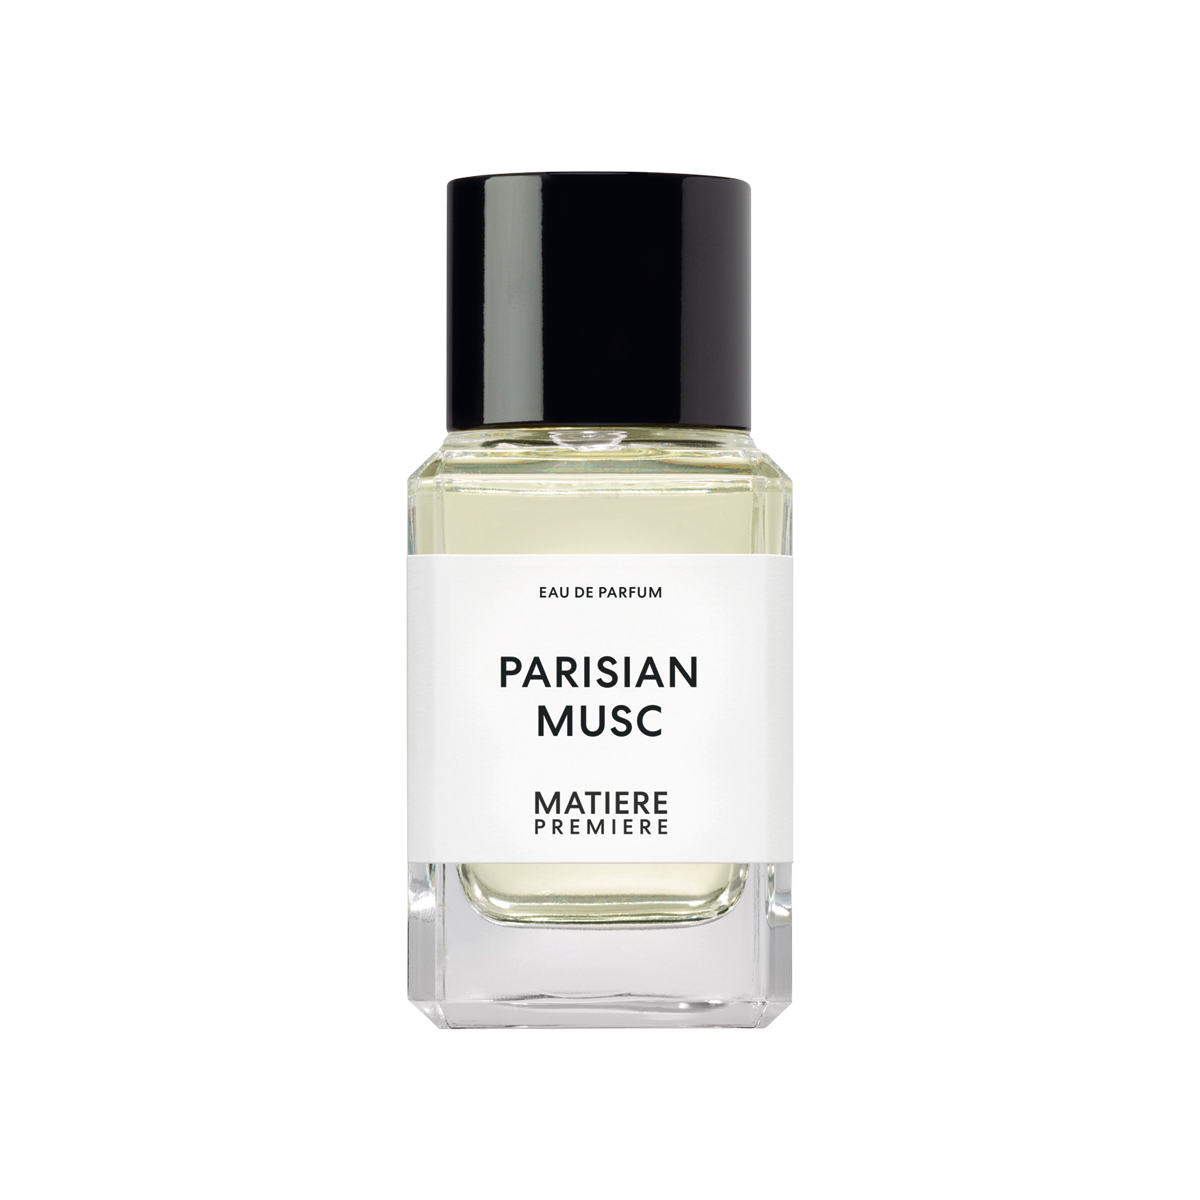 Matiere Premiere - Parisian Musc Eau de Parfum